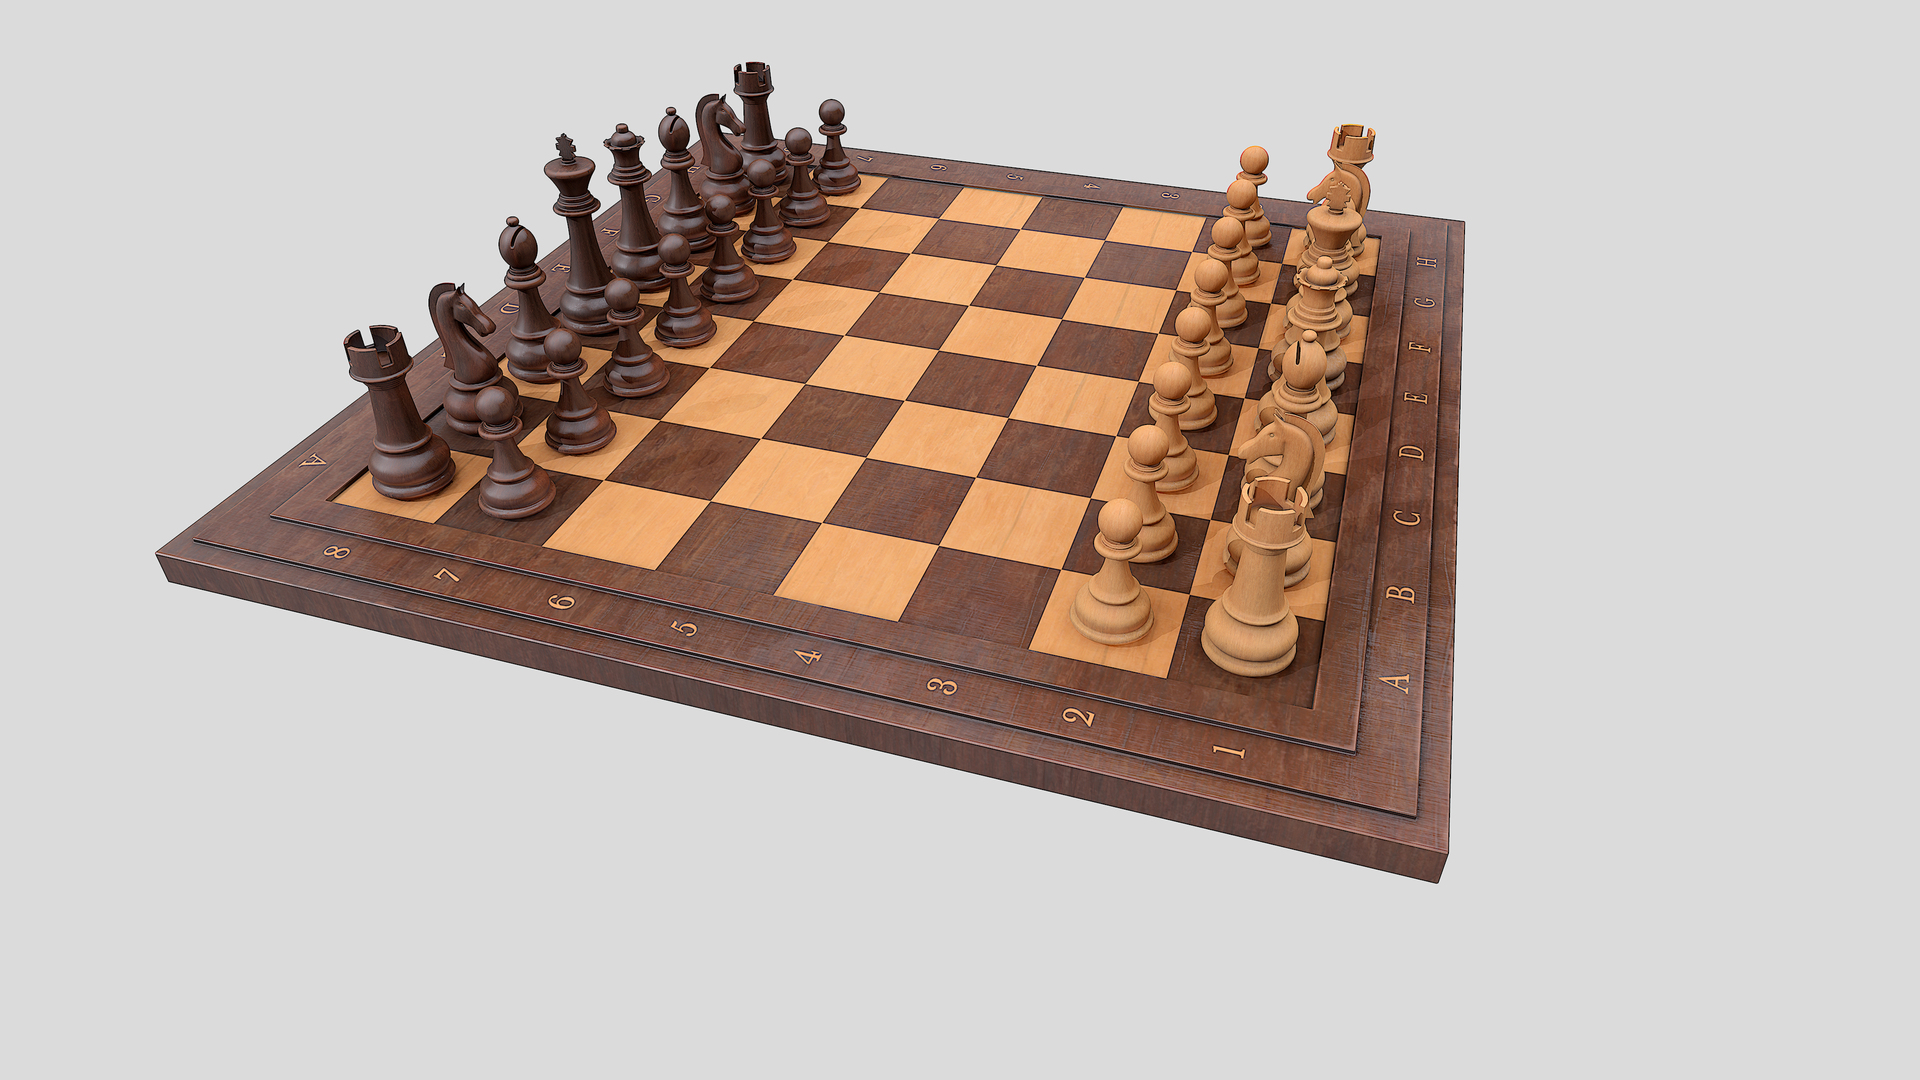 CSc 110 - 1 Dimensional Chess